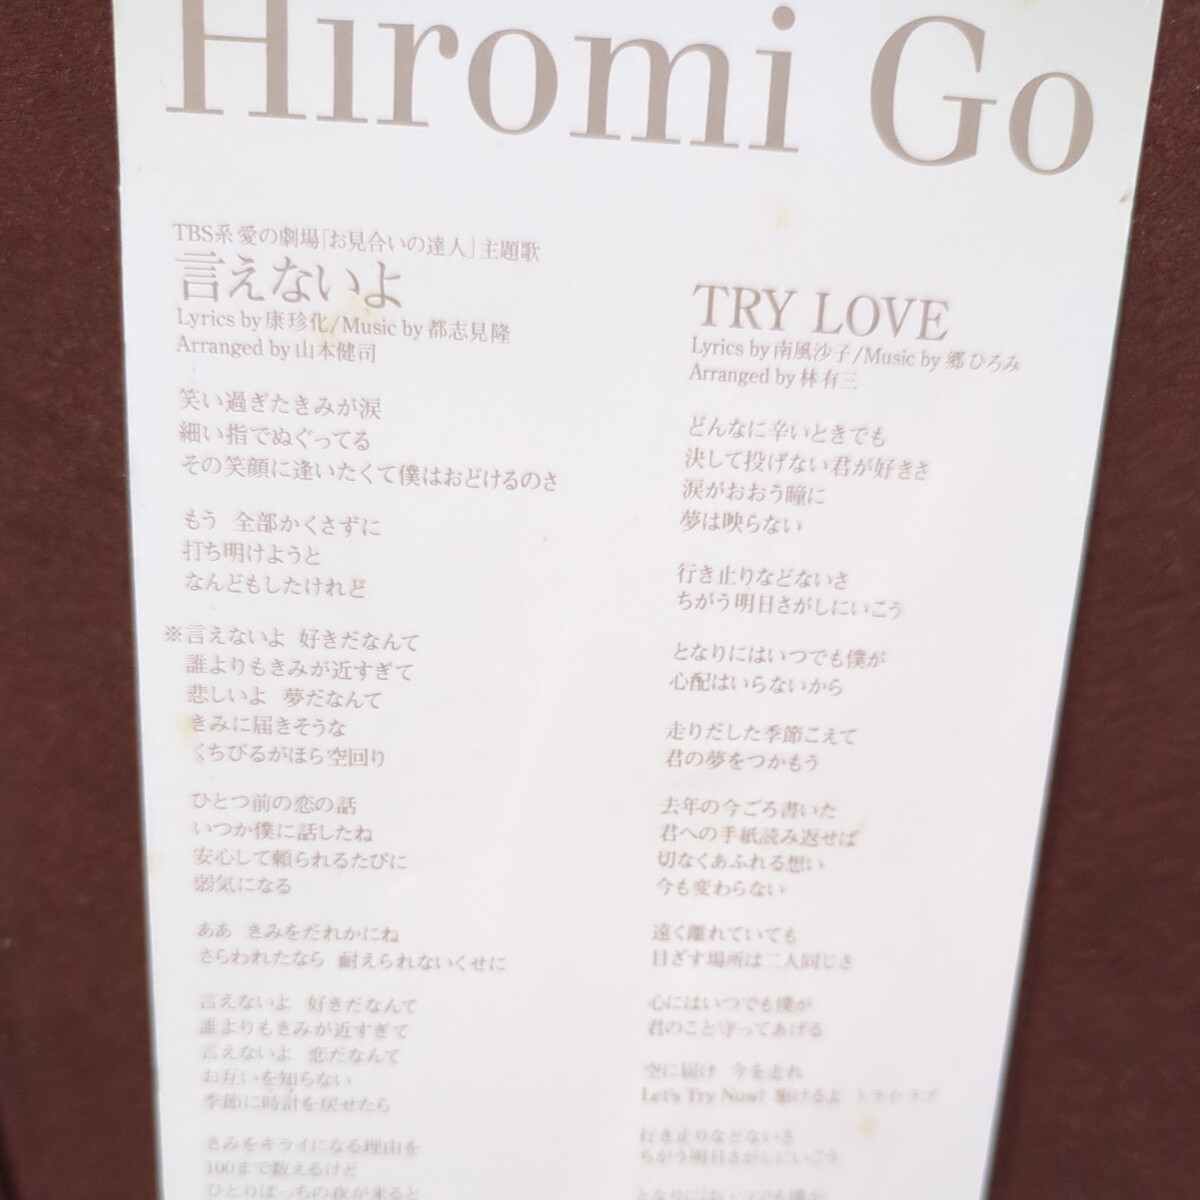 *5* Go Hiromi. одиночный CD[.. нет .]